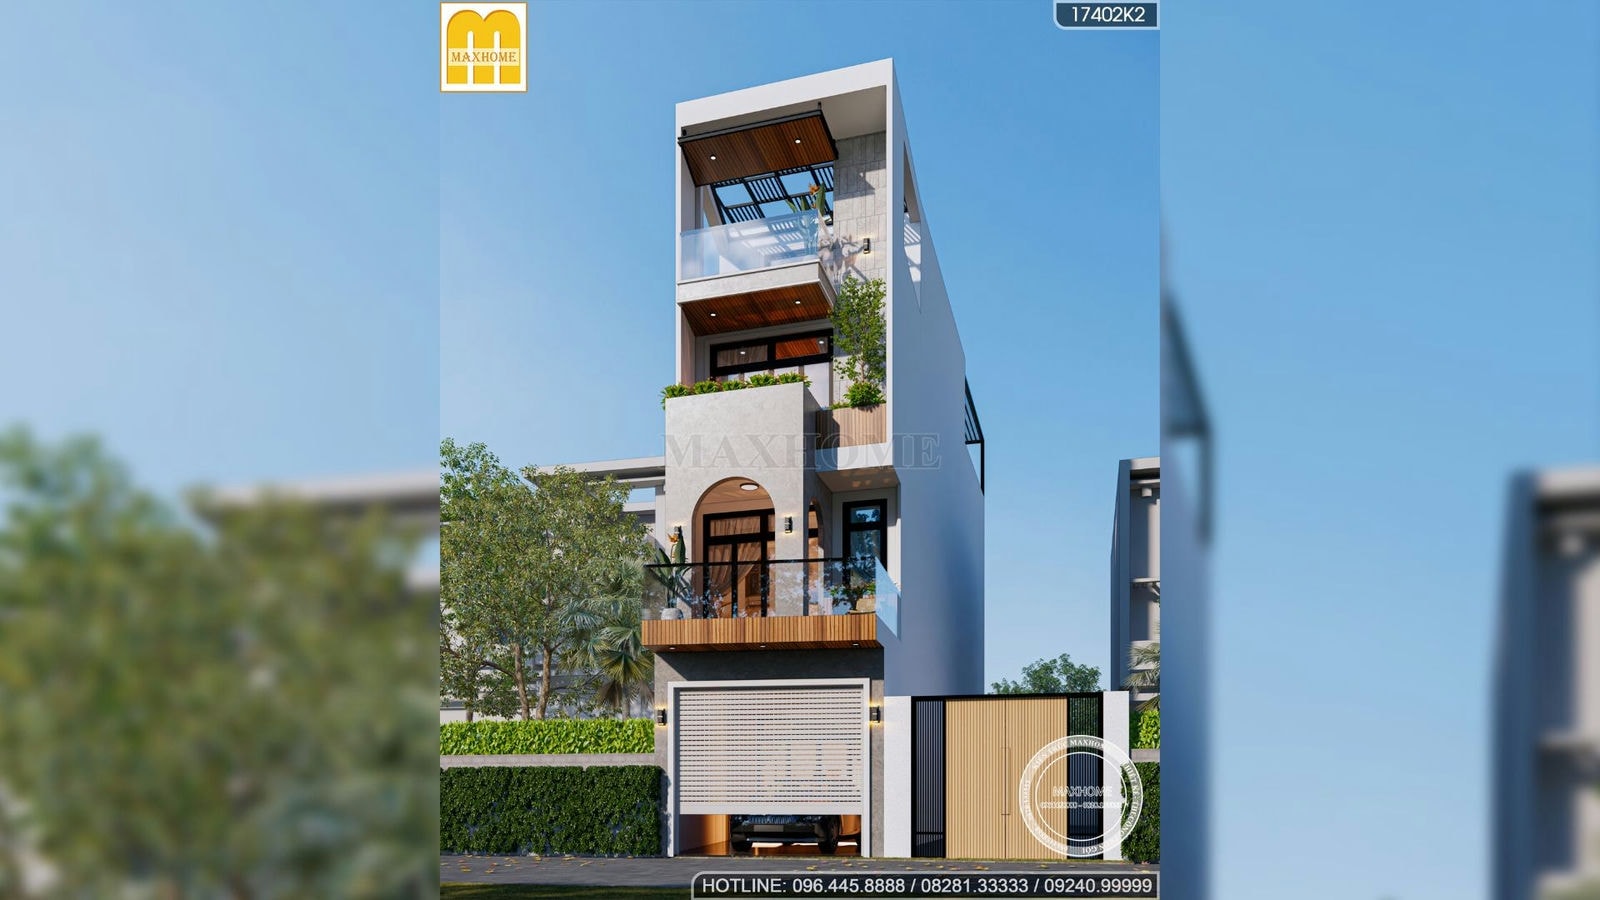 Maxhome thiết kế nhà phố 4 tầng độc đáo ở Hà Đông, Hà Nội | MH01779